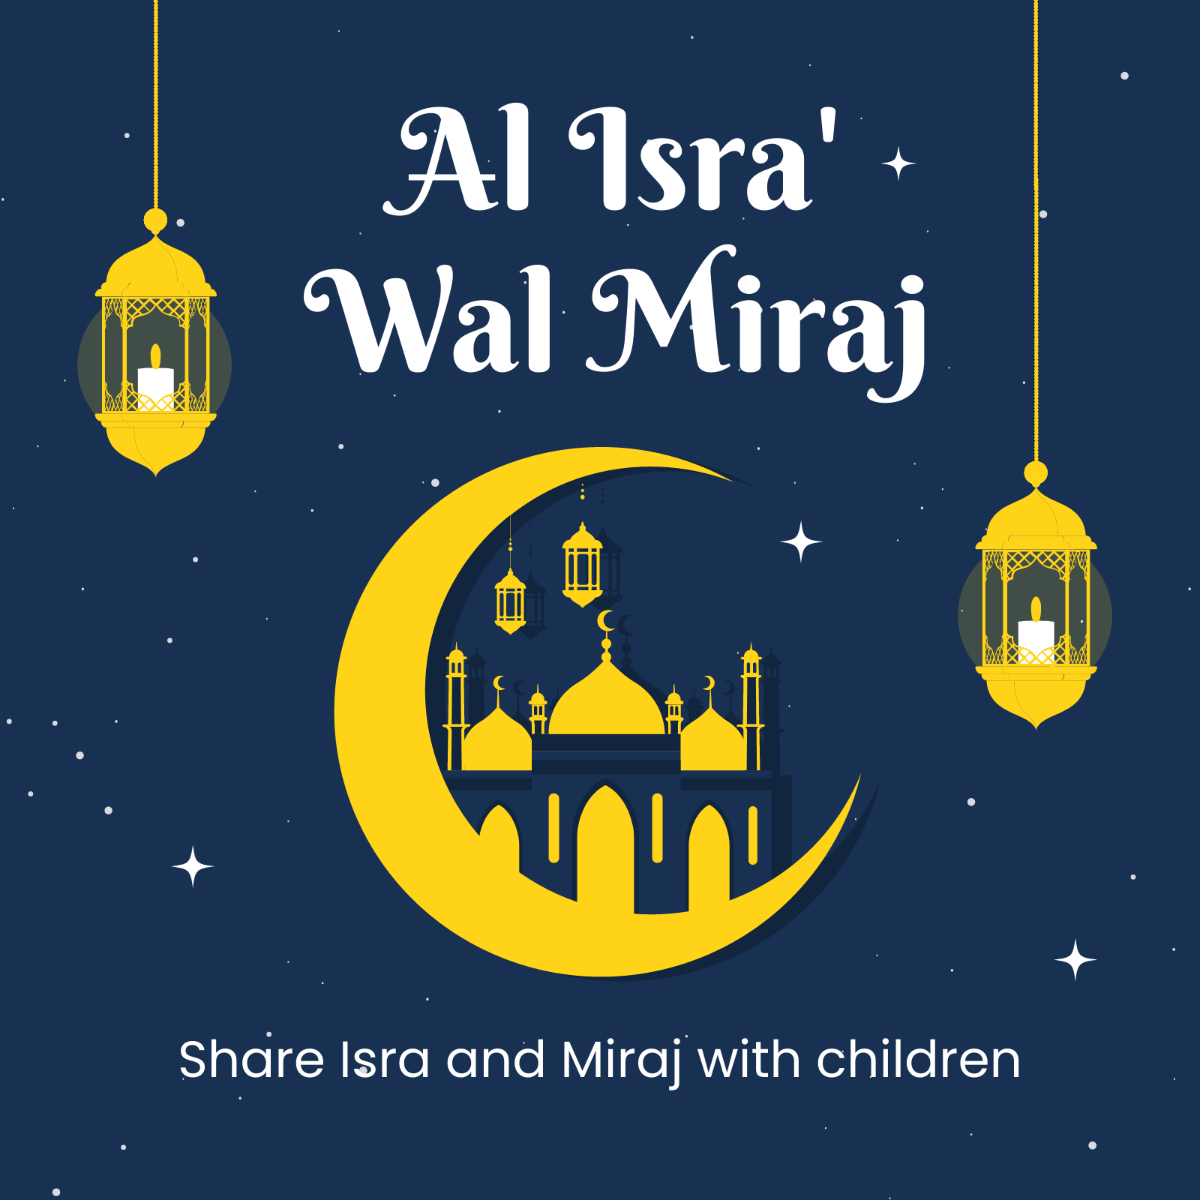 Free Al Isra' wal Miraj Whatsapp Post Template